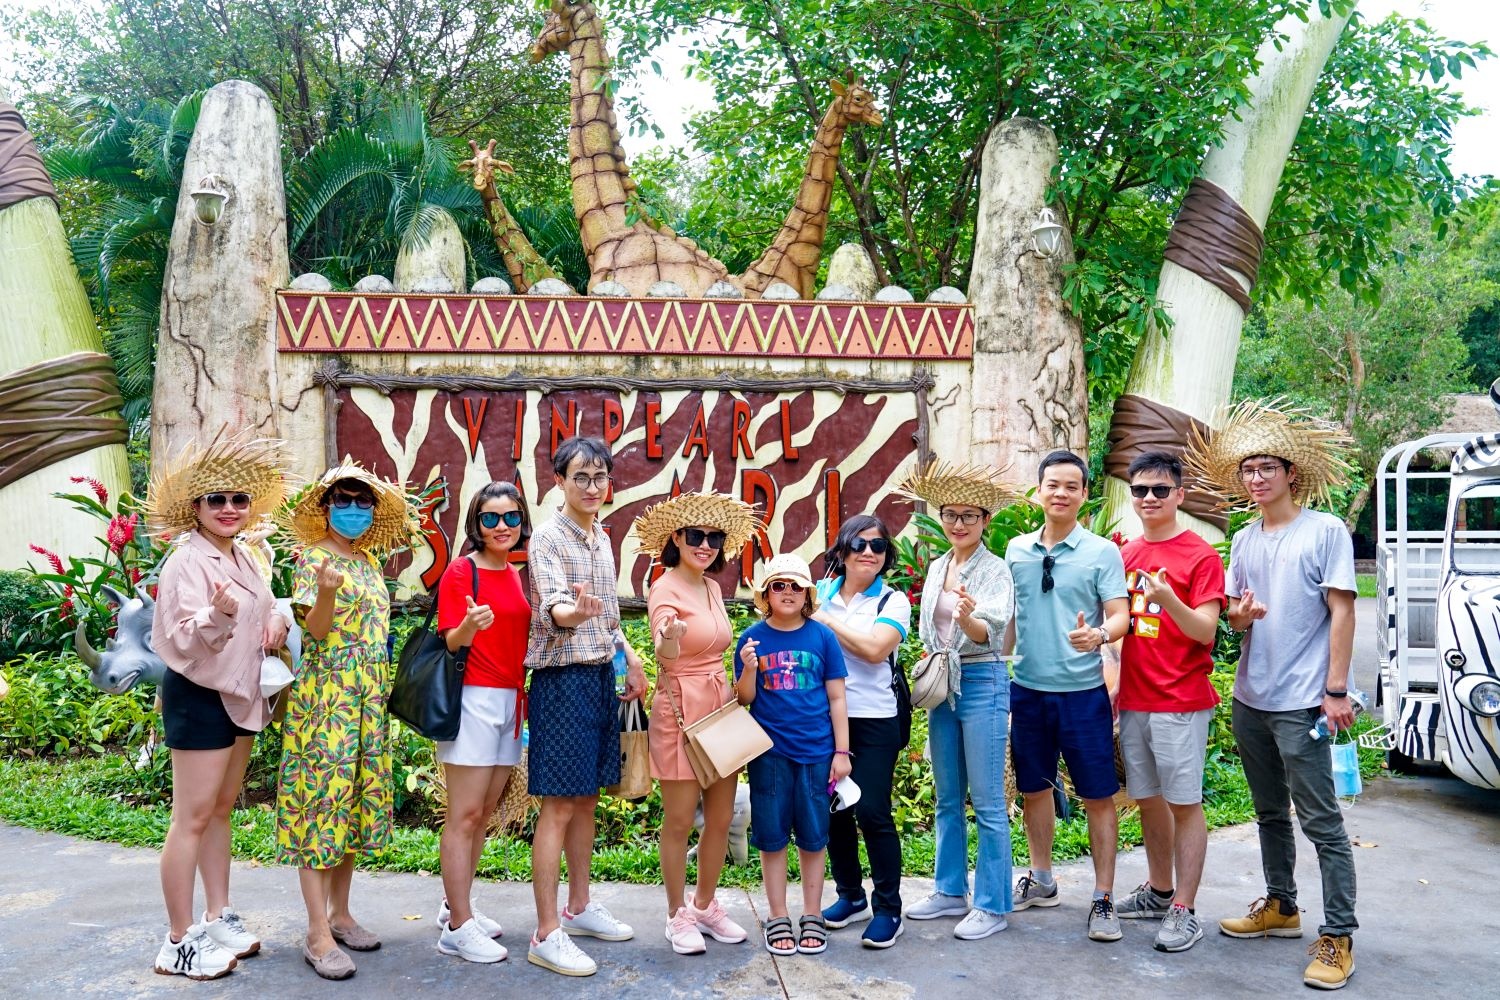 Hơn 40.000 lượt khách chọn Lữ hành Saigontourist để đi du lịch dịp 2/9